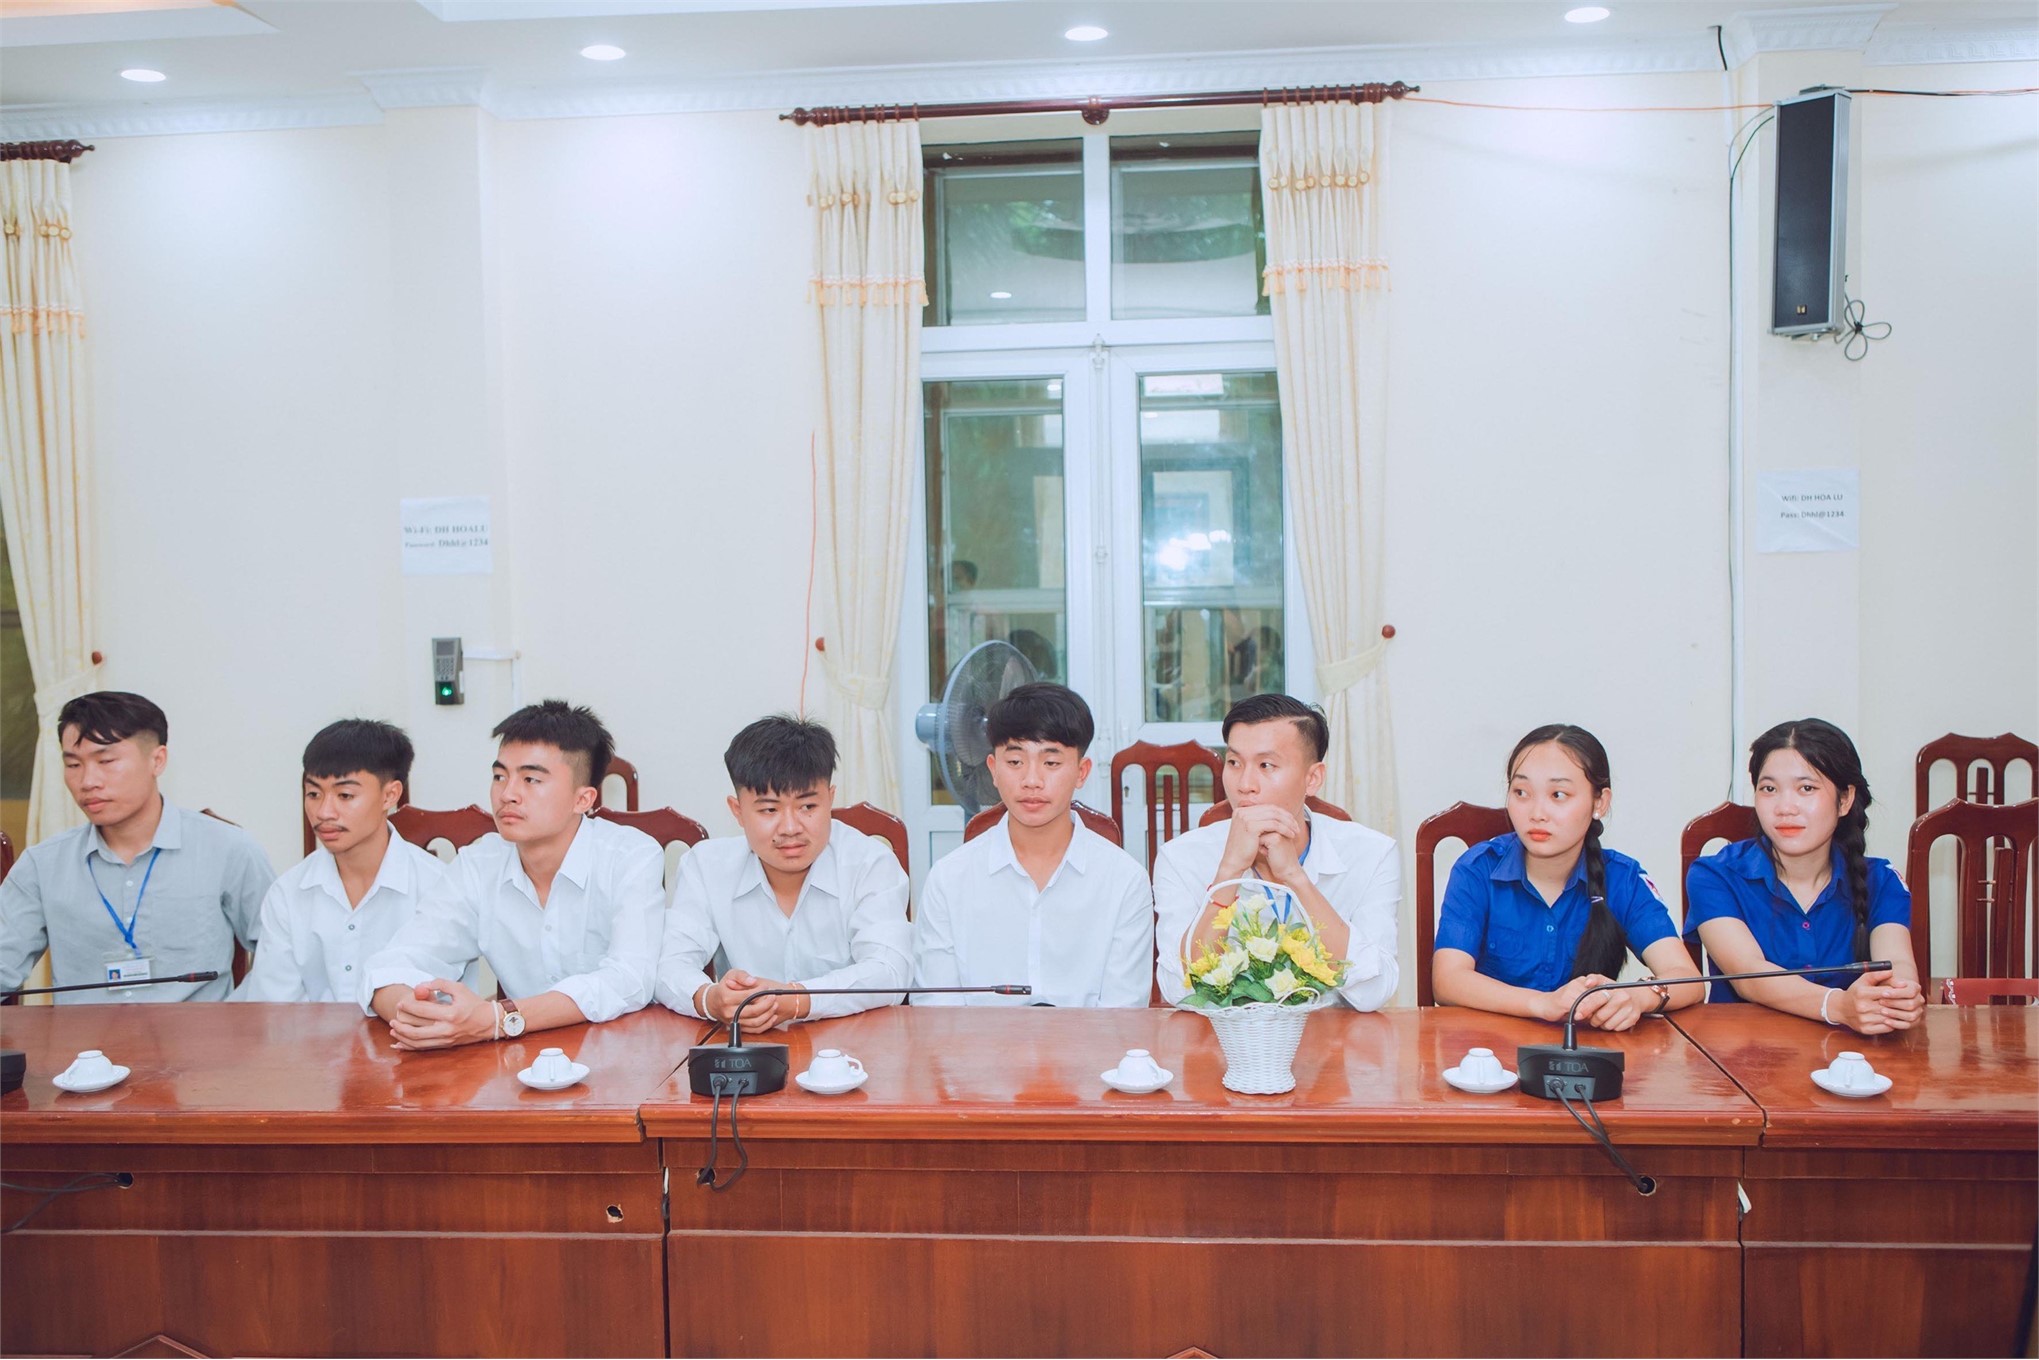 Lễ tiếp nhận lưu học sinh nước Cộng hòa dân chủ nhân dân Lào năm học 2022 - 2023